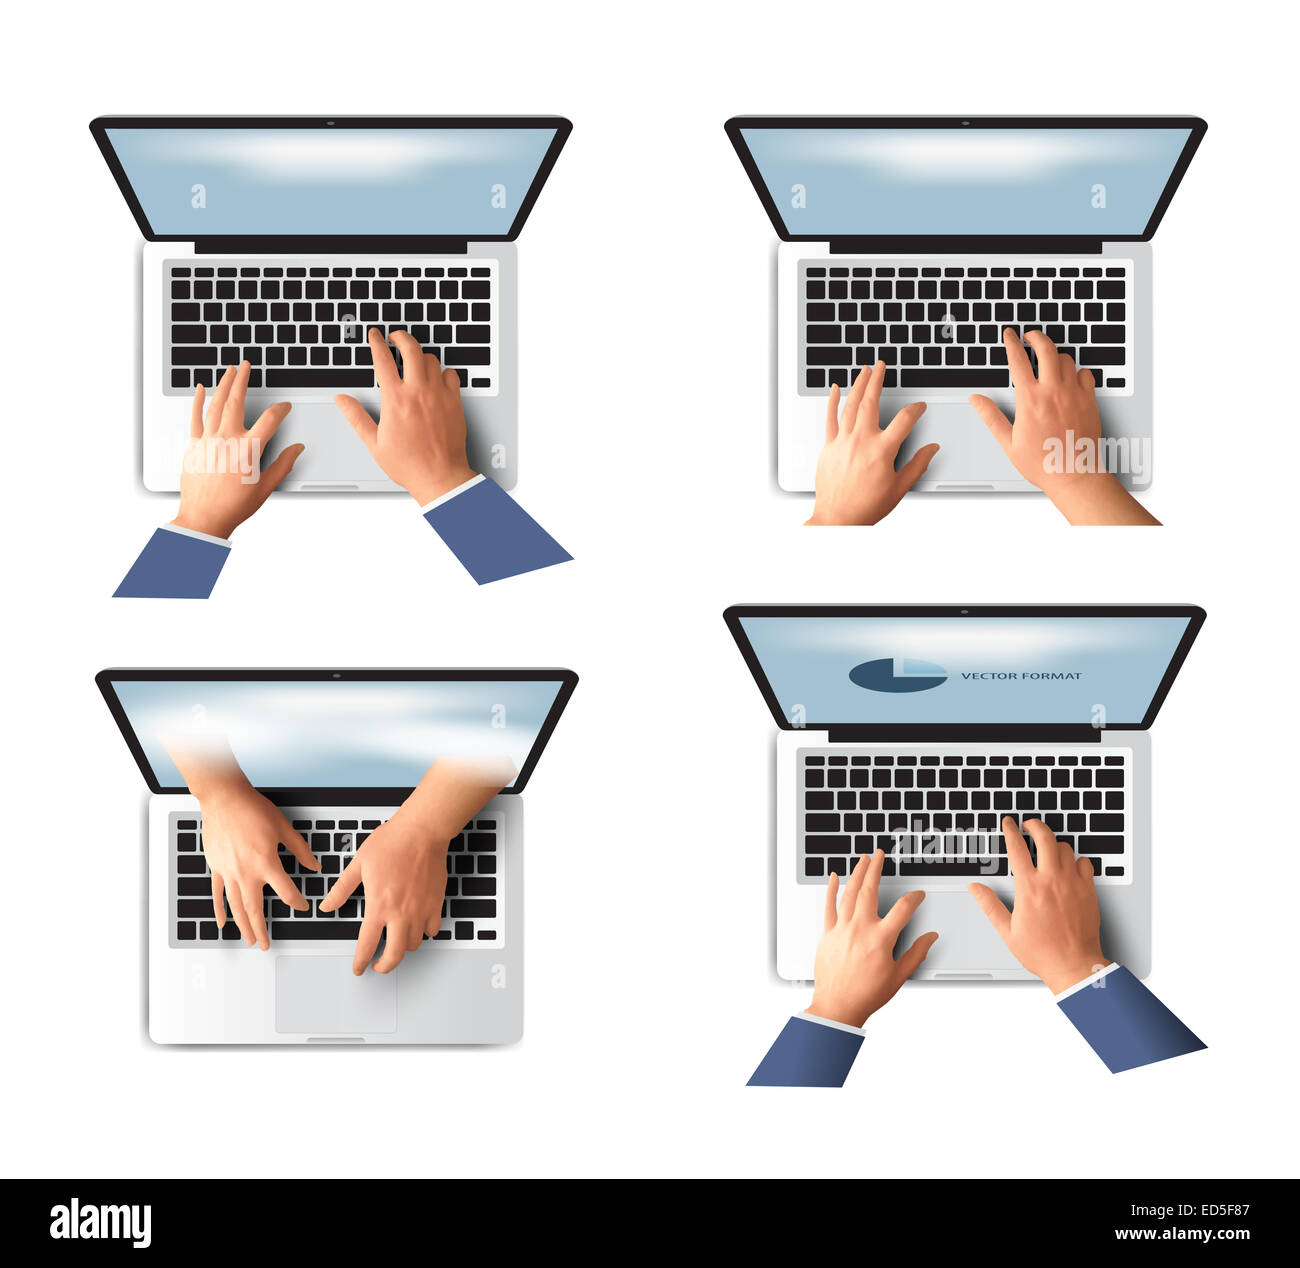 Business Hand auf Notebook-Computer-Tastatur mit Bildschirm  öffnen-Vektor-illustration Stockfotografie - Alamy